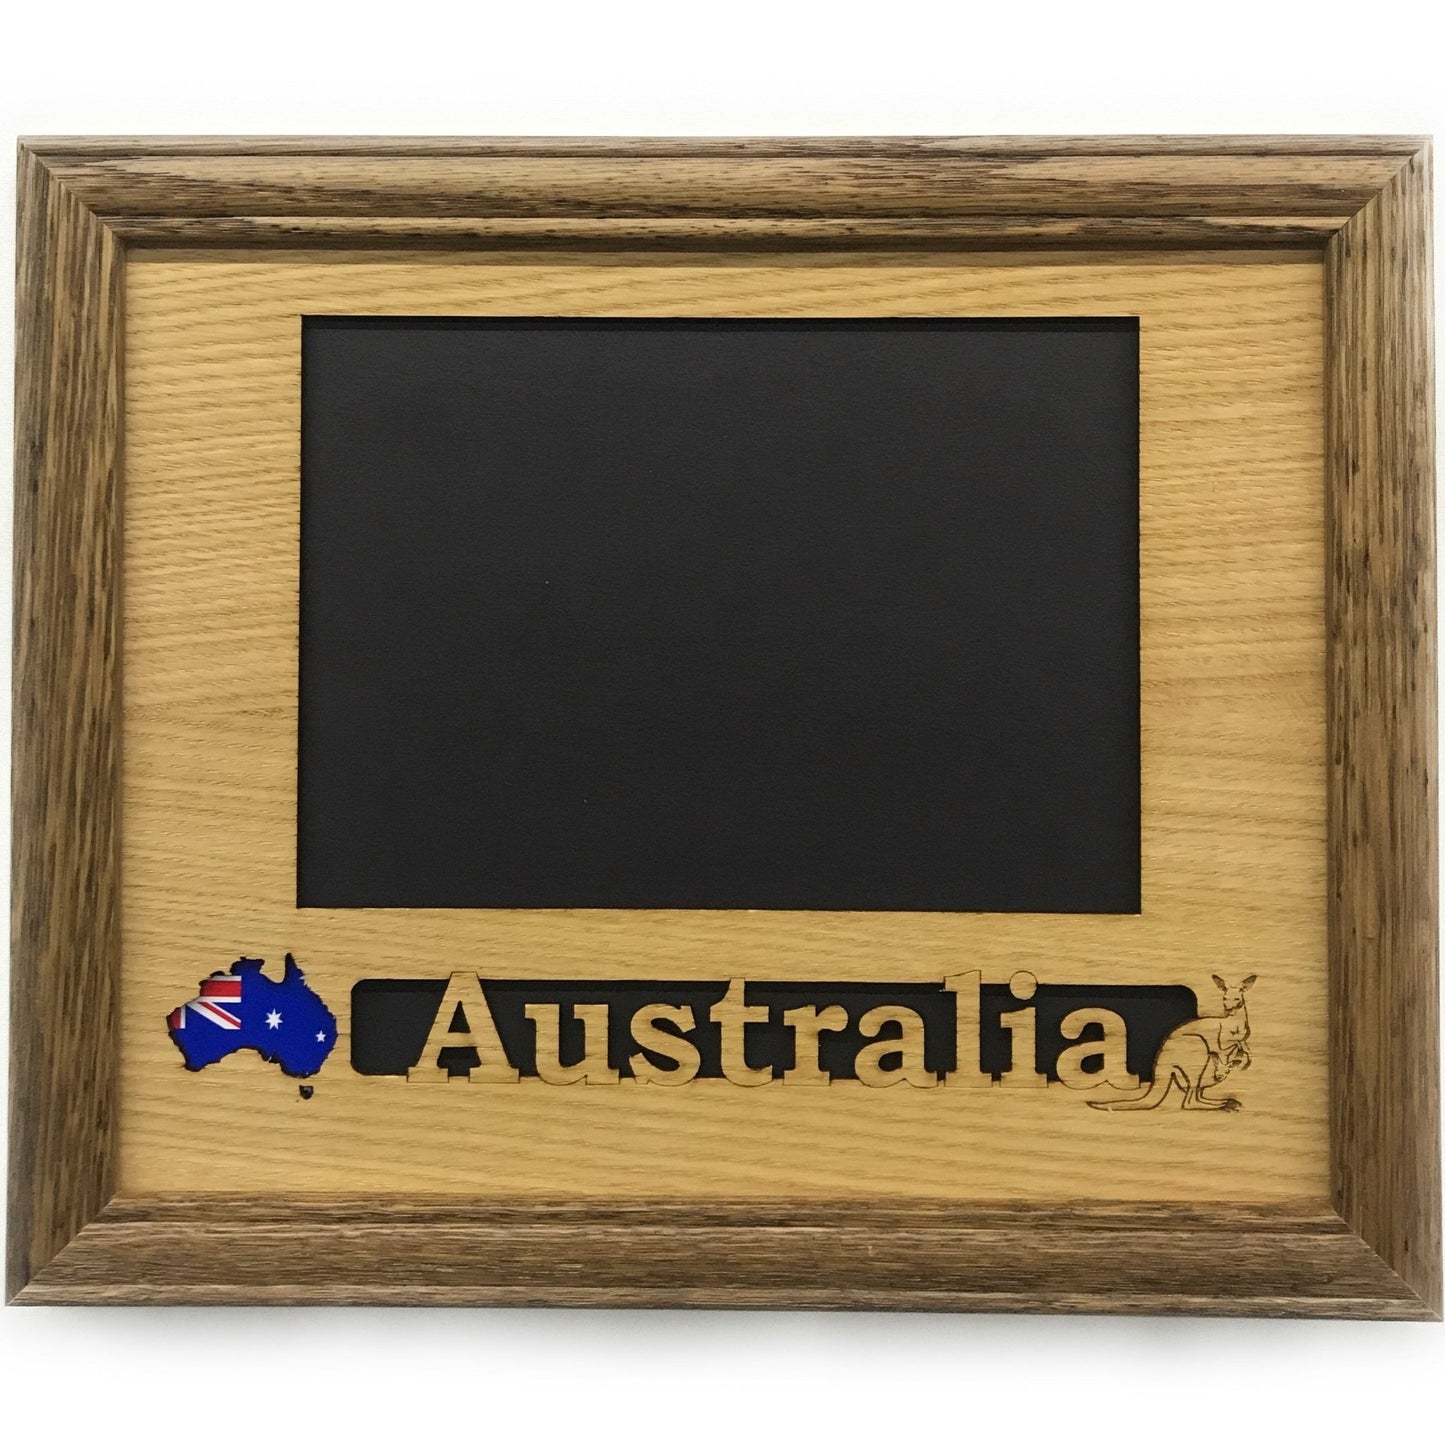 Australia Picture Frame - Australia Picture Frame - Legacy Images - Picture Frames - Legacy Images - Picture Frames